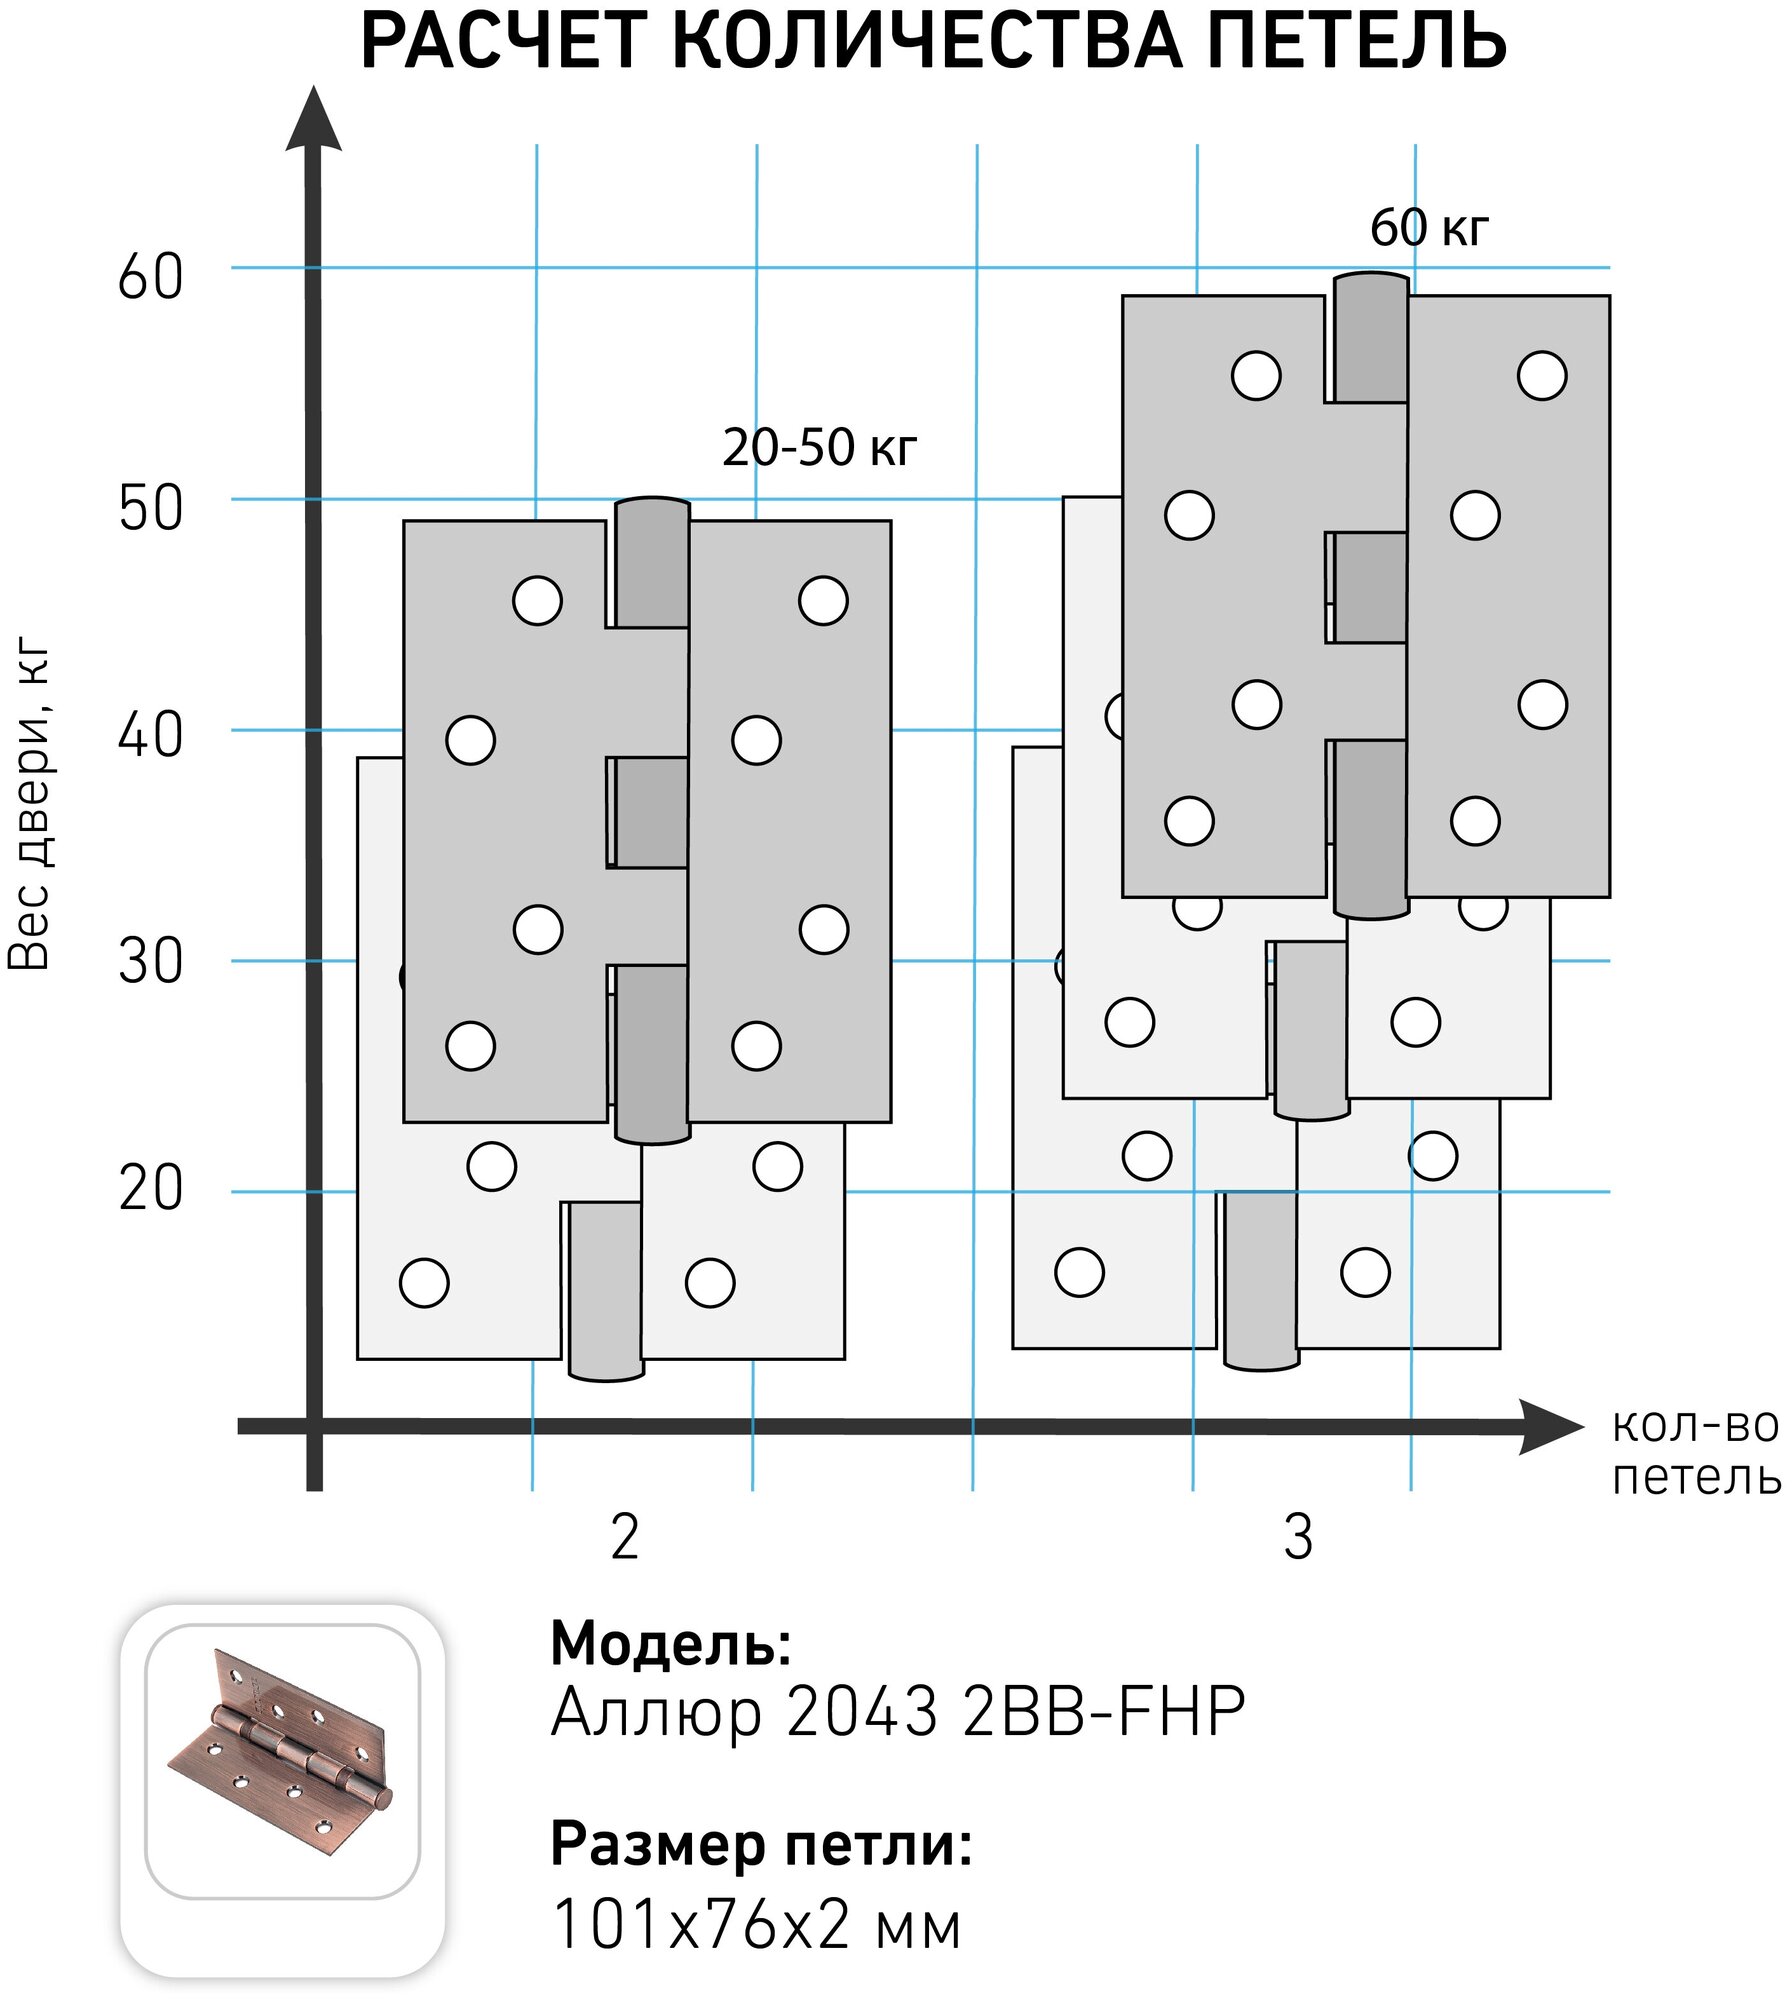 Петля дверная (2 штуки) универсальная аллюр 2043 (101х76) 2BB-FHP CP, цвет хром